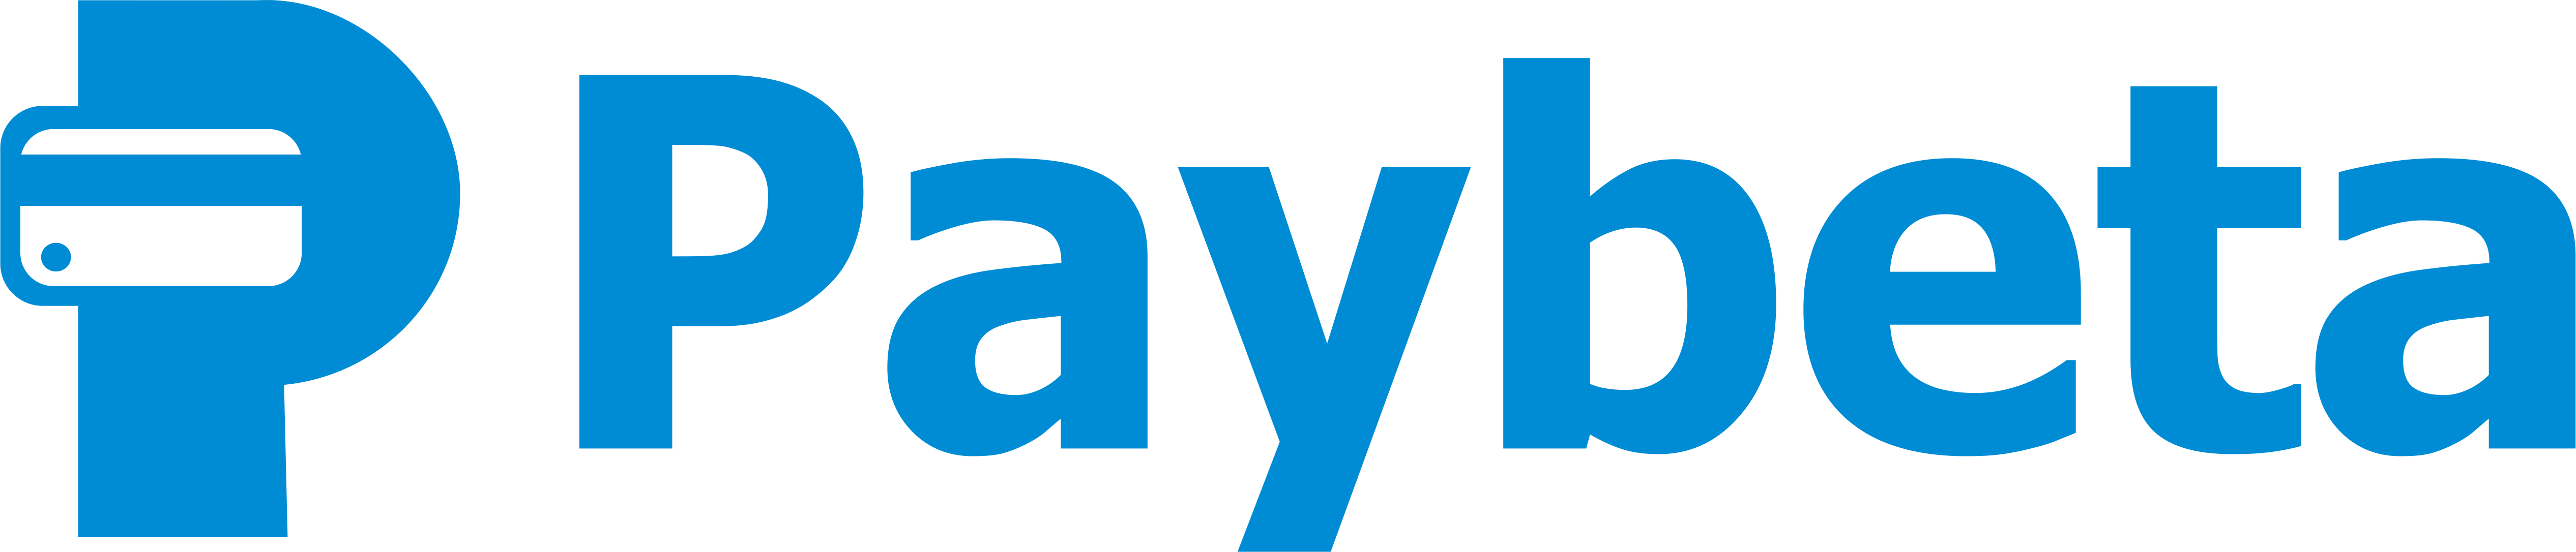 Paybeta Logo